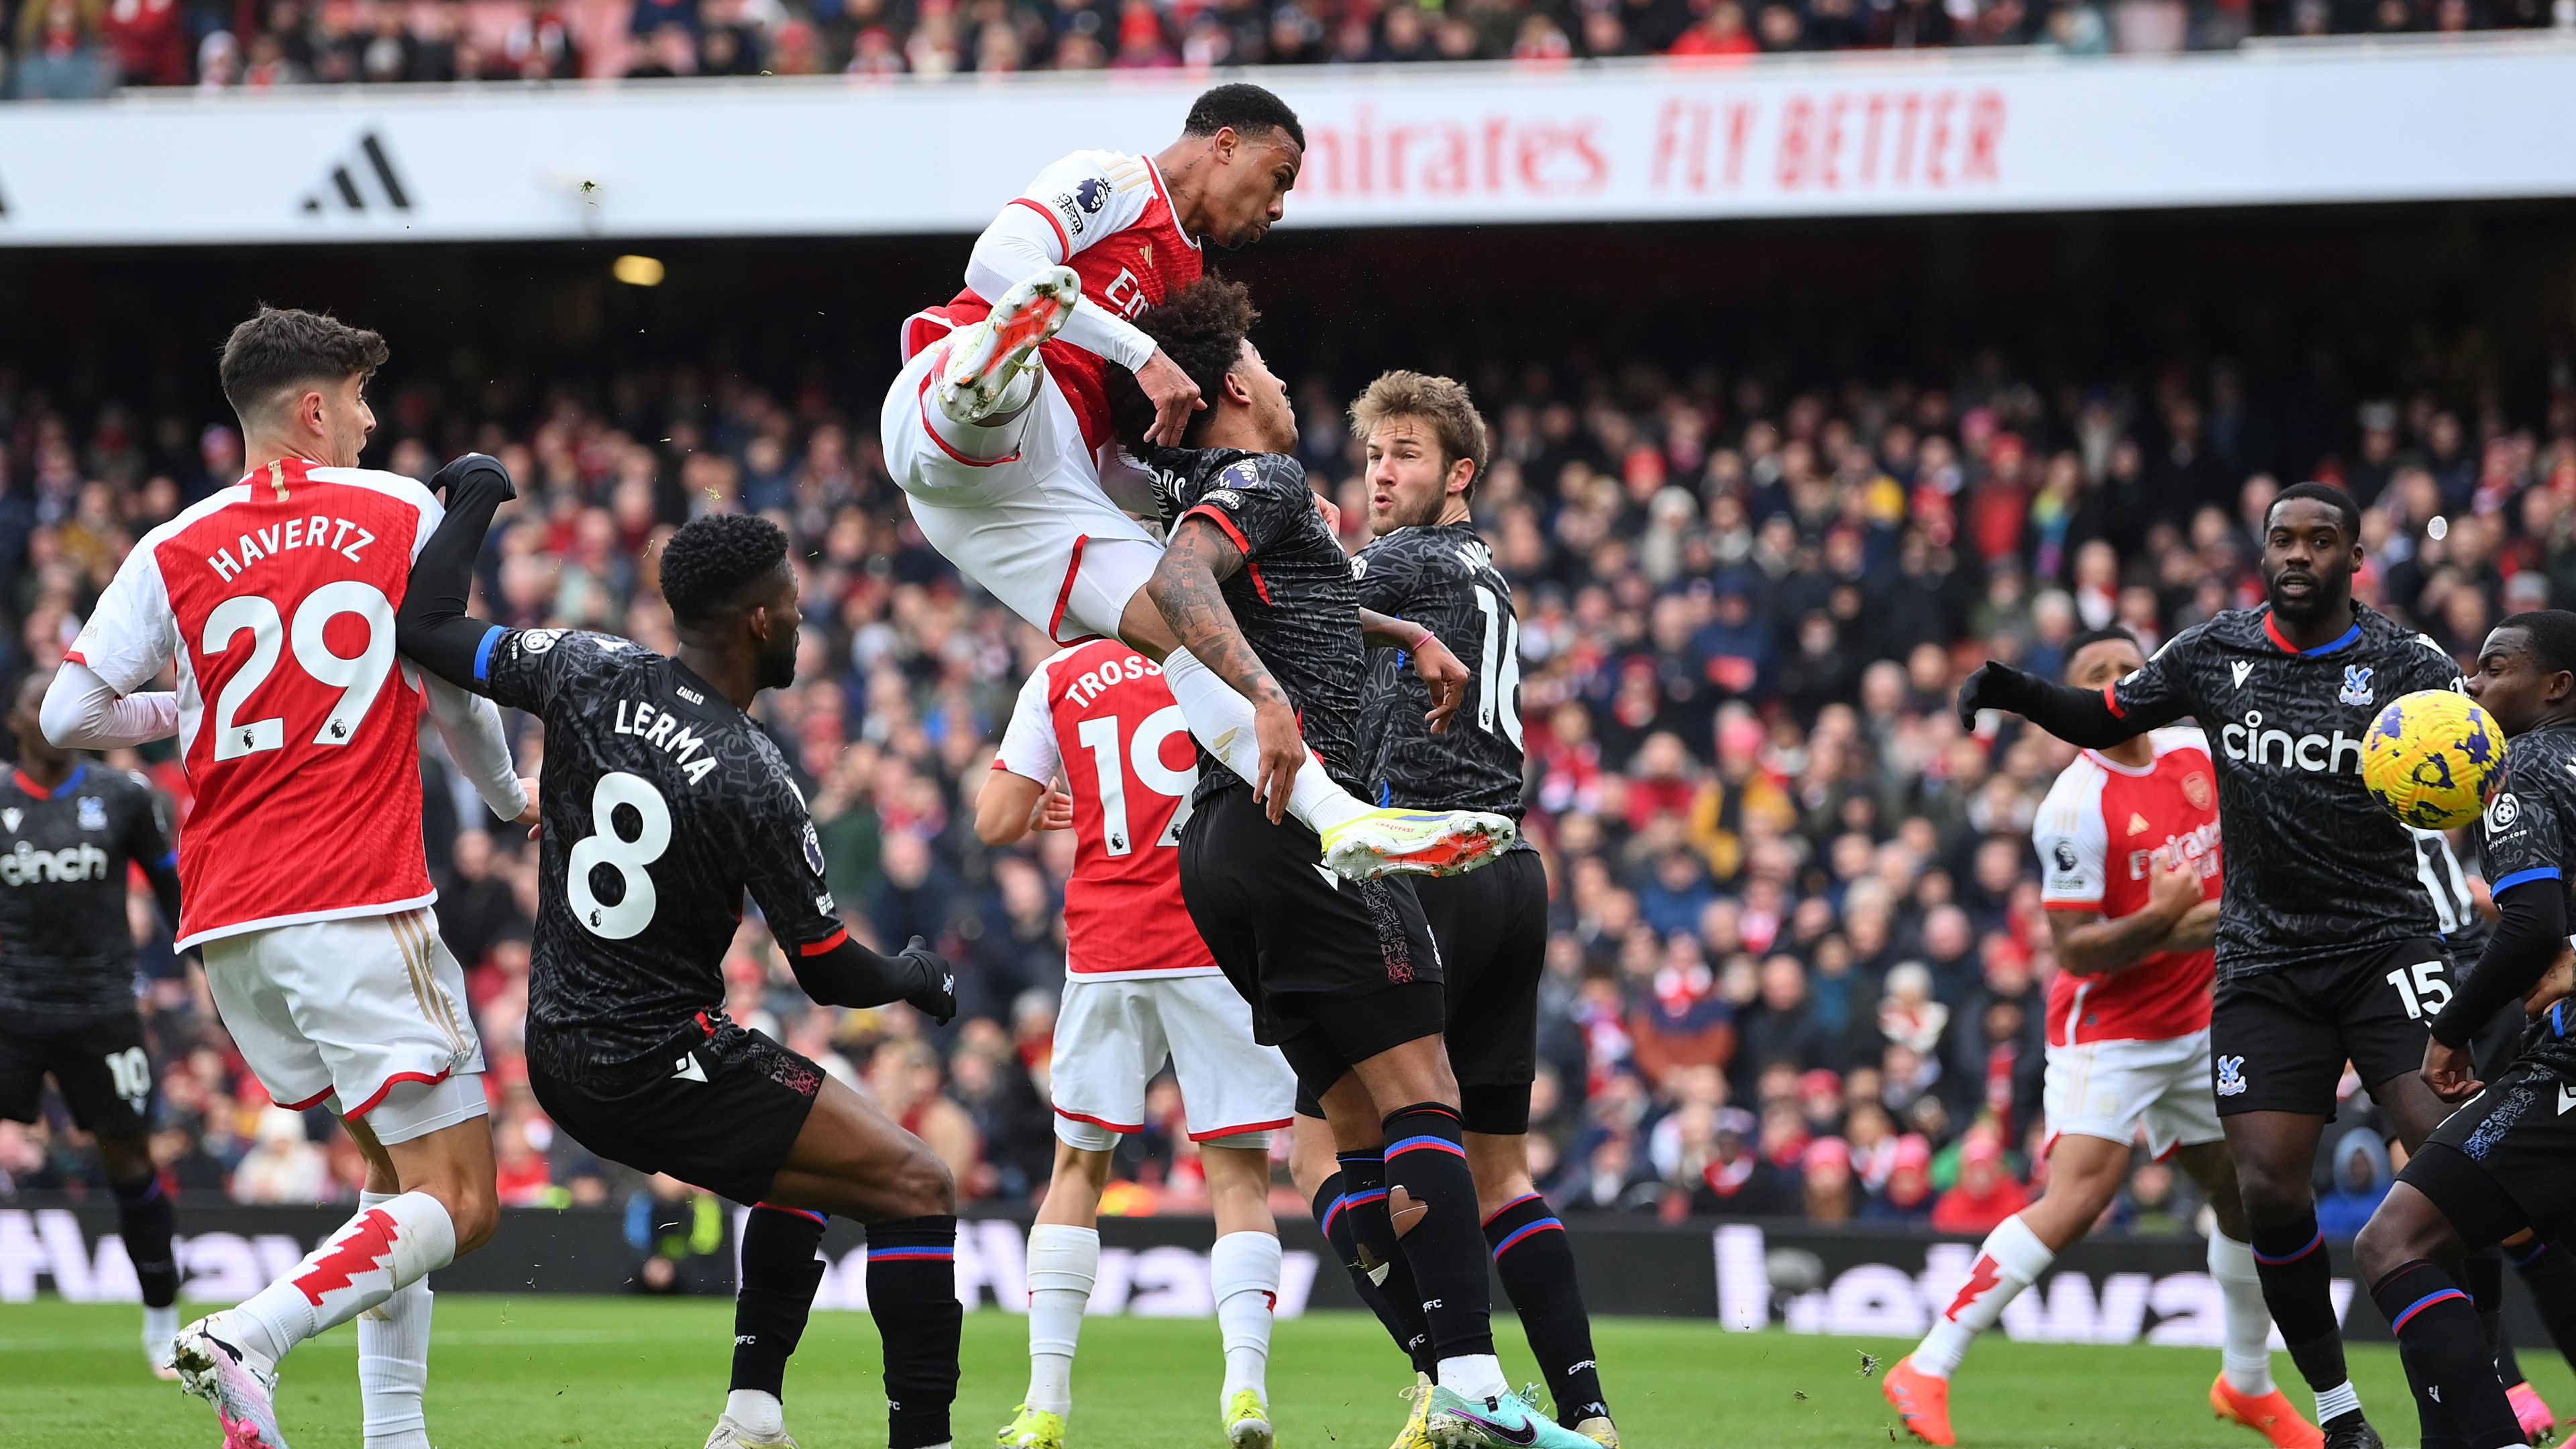 Gary Neville odaszúrt az Arsenal-drukkereknek: „Szerintetek ez is szabálytalan?” – fotóval